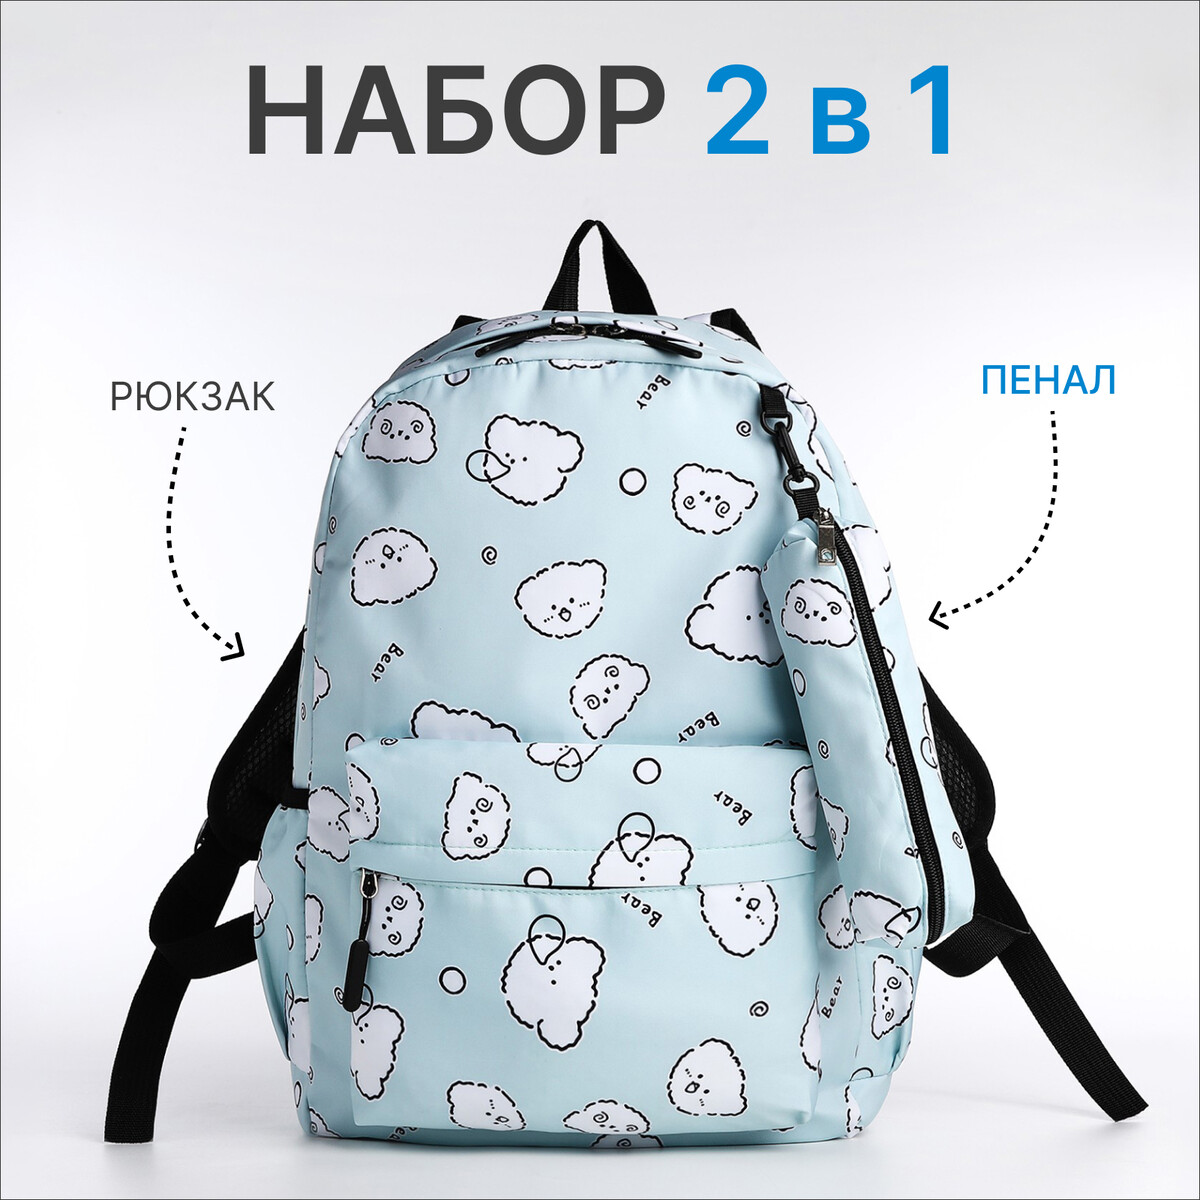 Набор рюкзак школьный из текстиля на молнии, 3 кармана, пенал, цвет бирюзовый